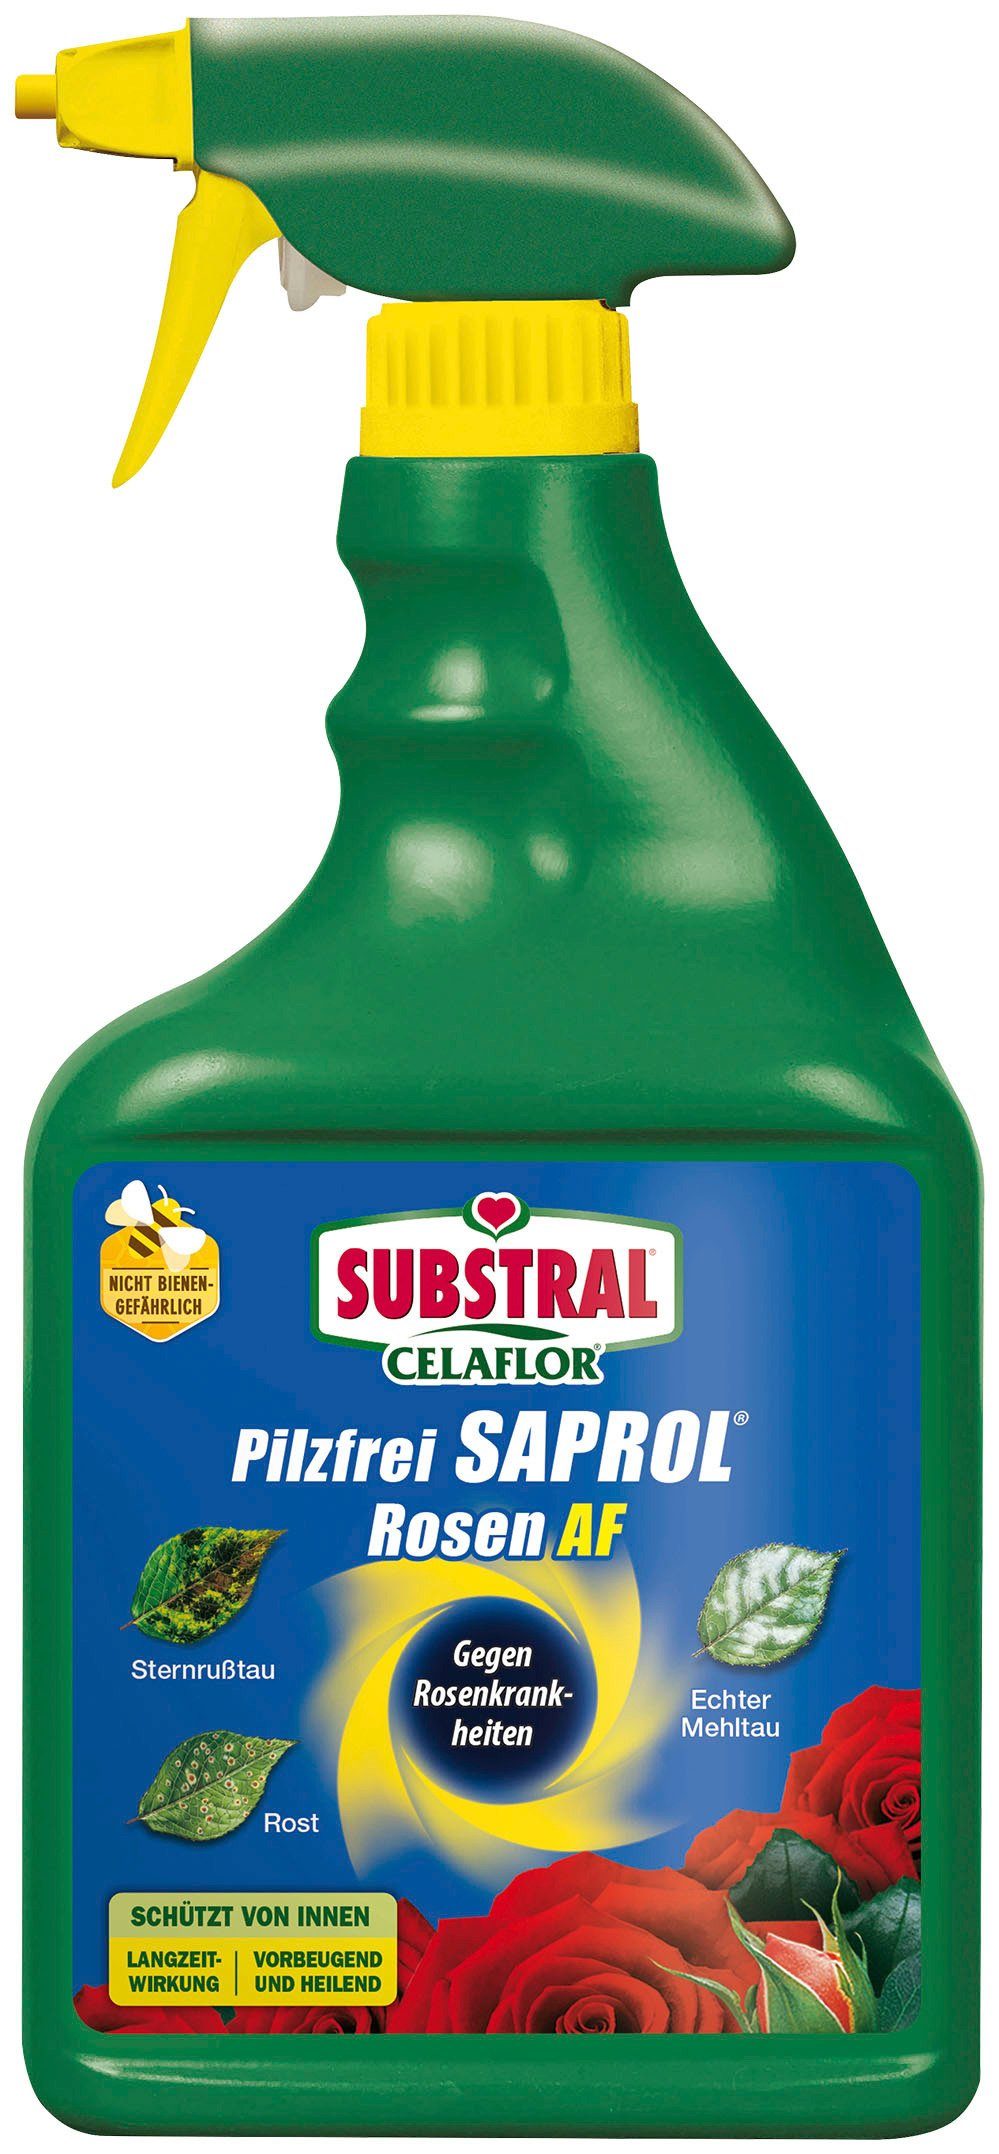 Substral Pflanzen-Pilzfrei Pilzfrei Saprol Rosen AF, 750 ml